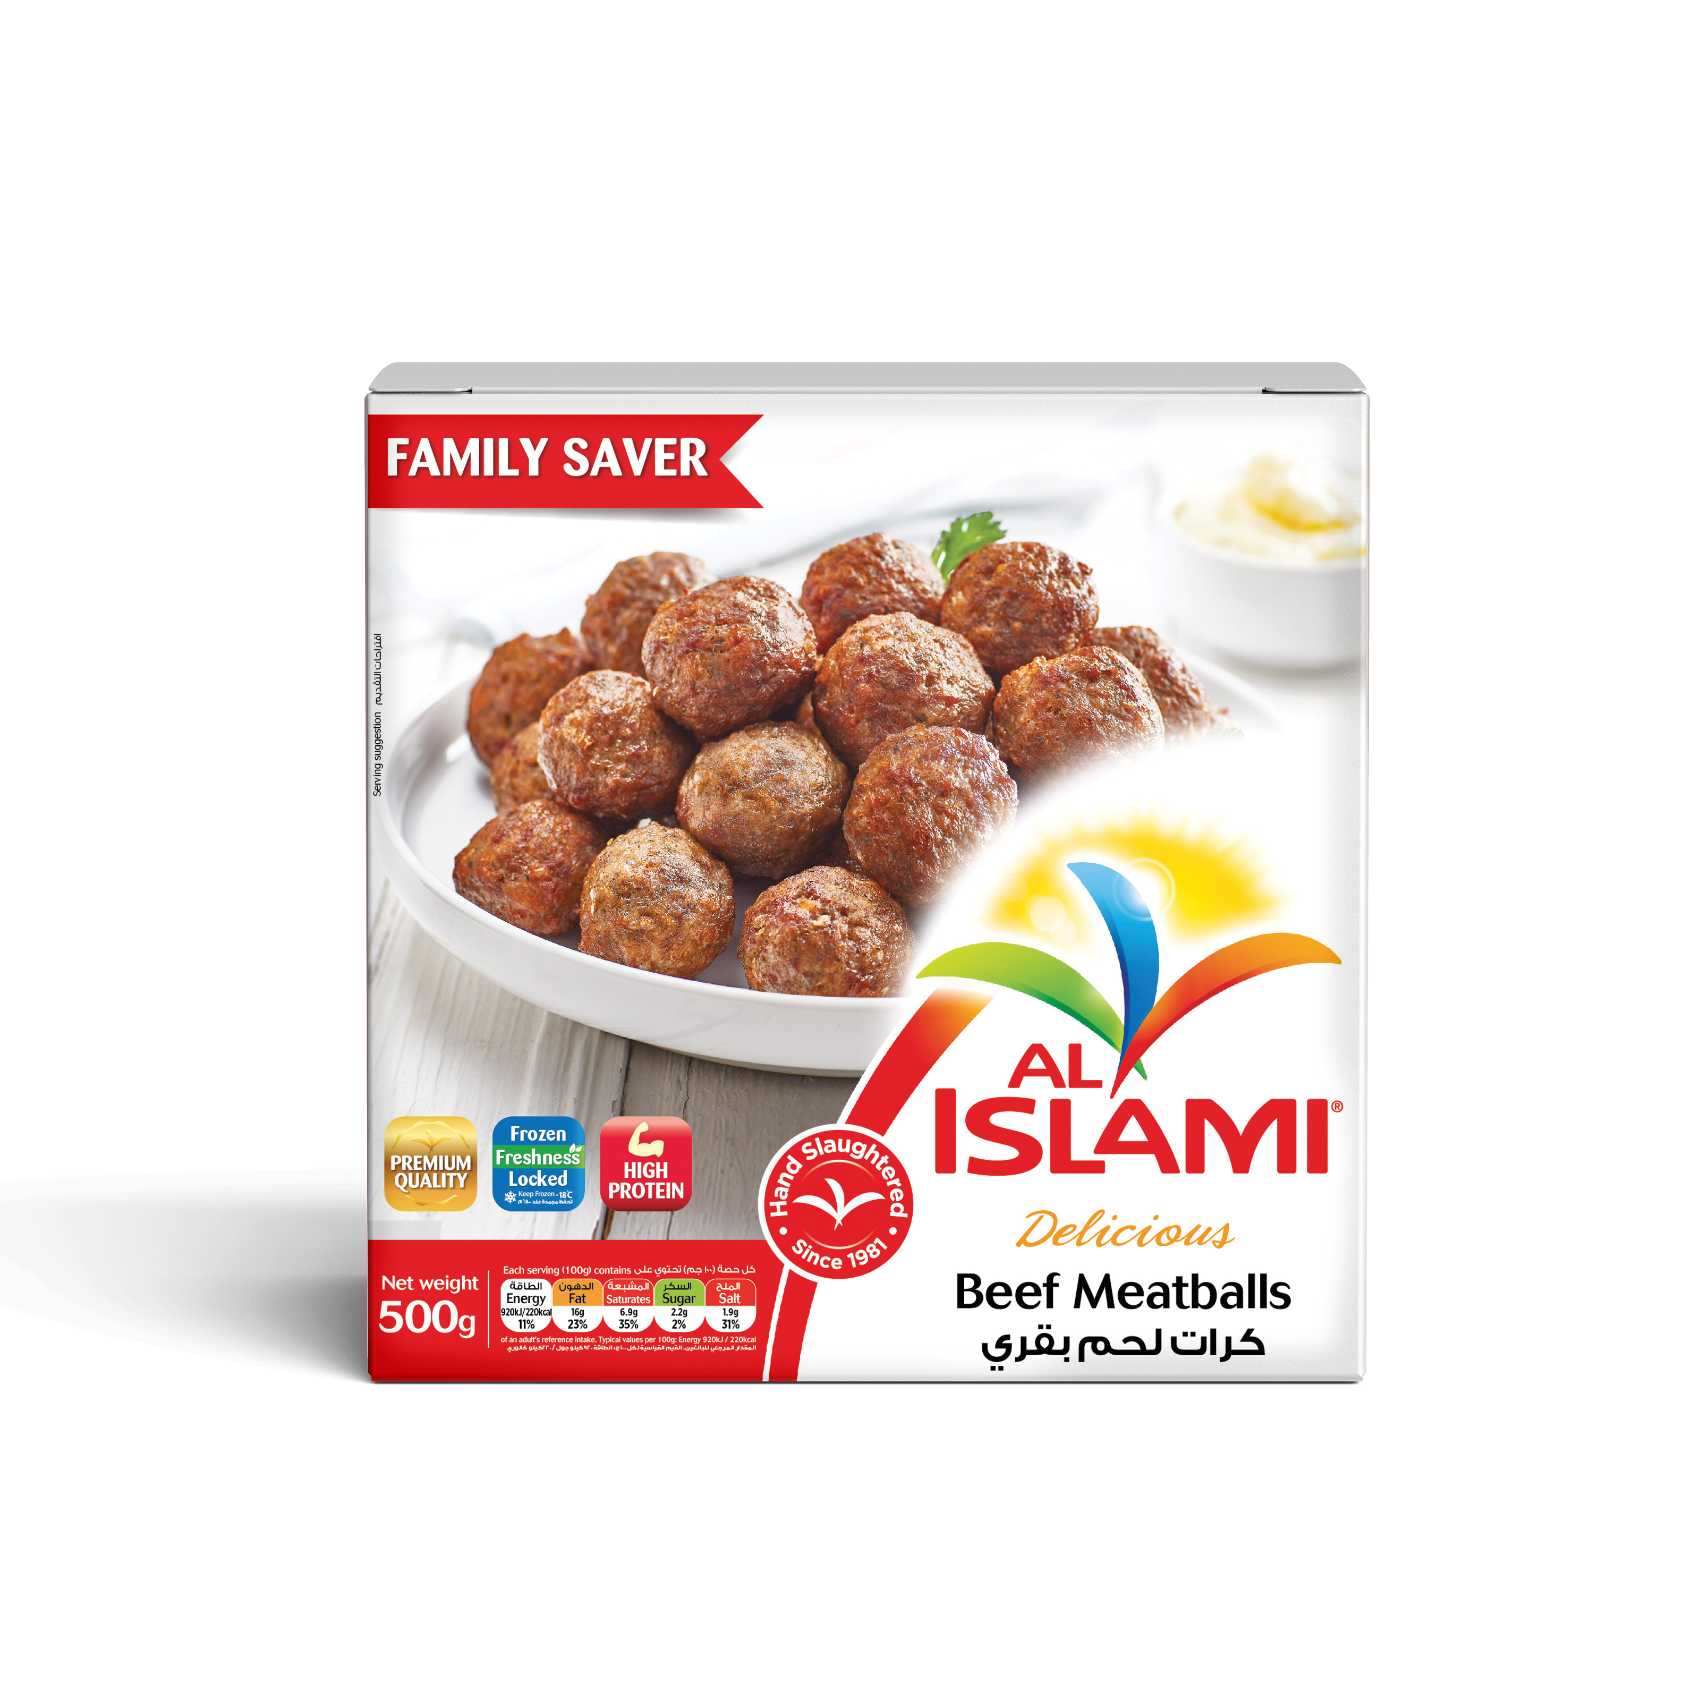 Al Islami Beef Meatballs 500g